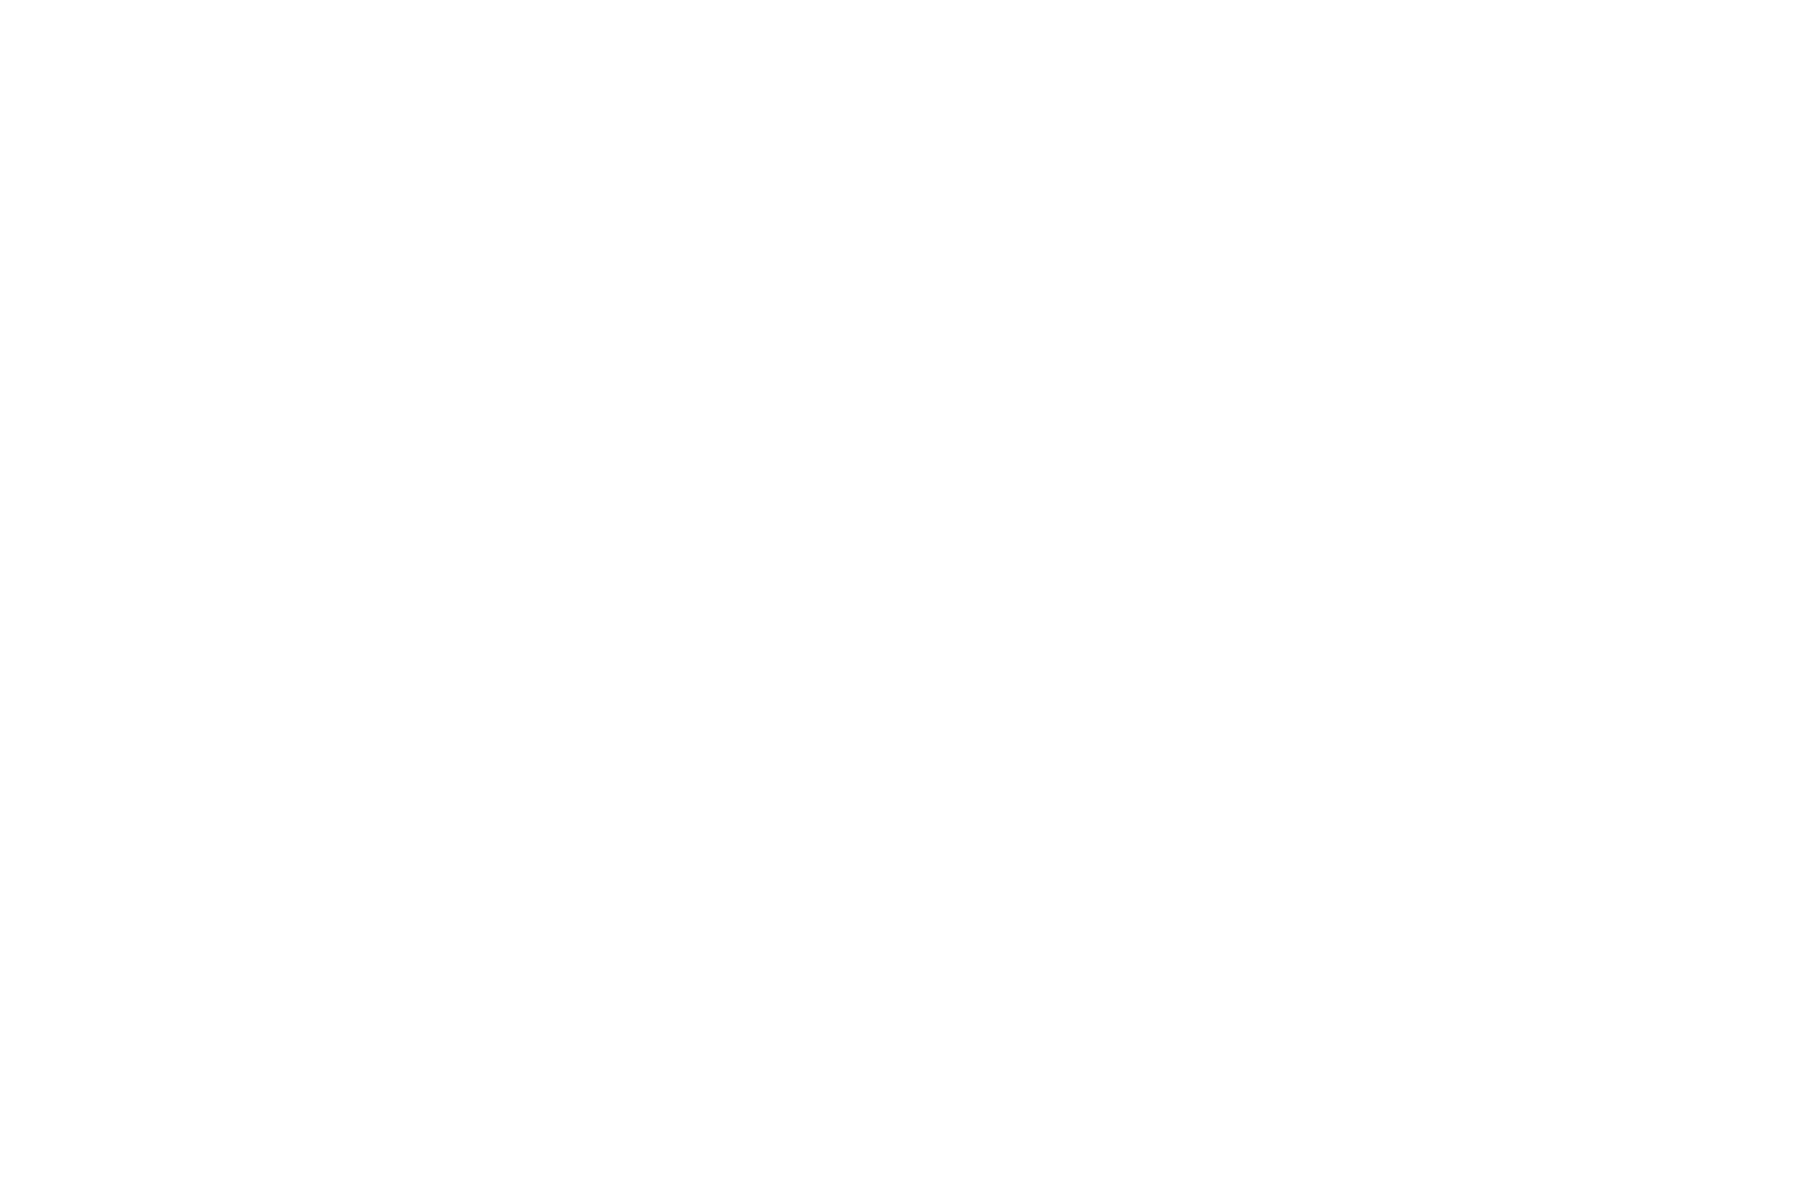 C&C HOLDING